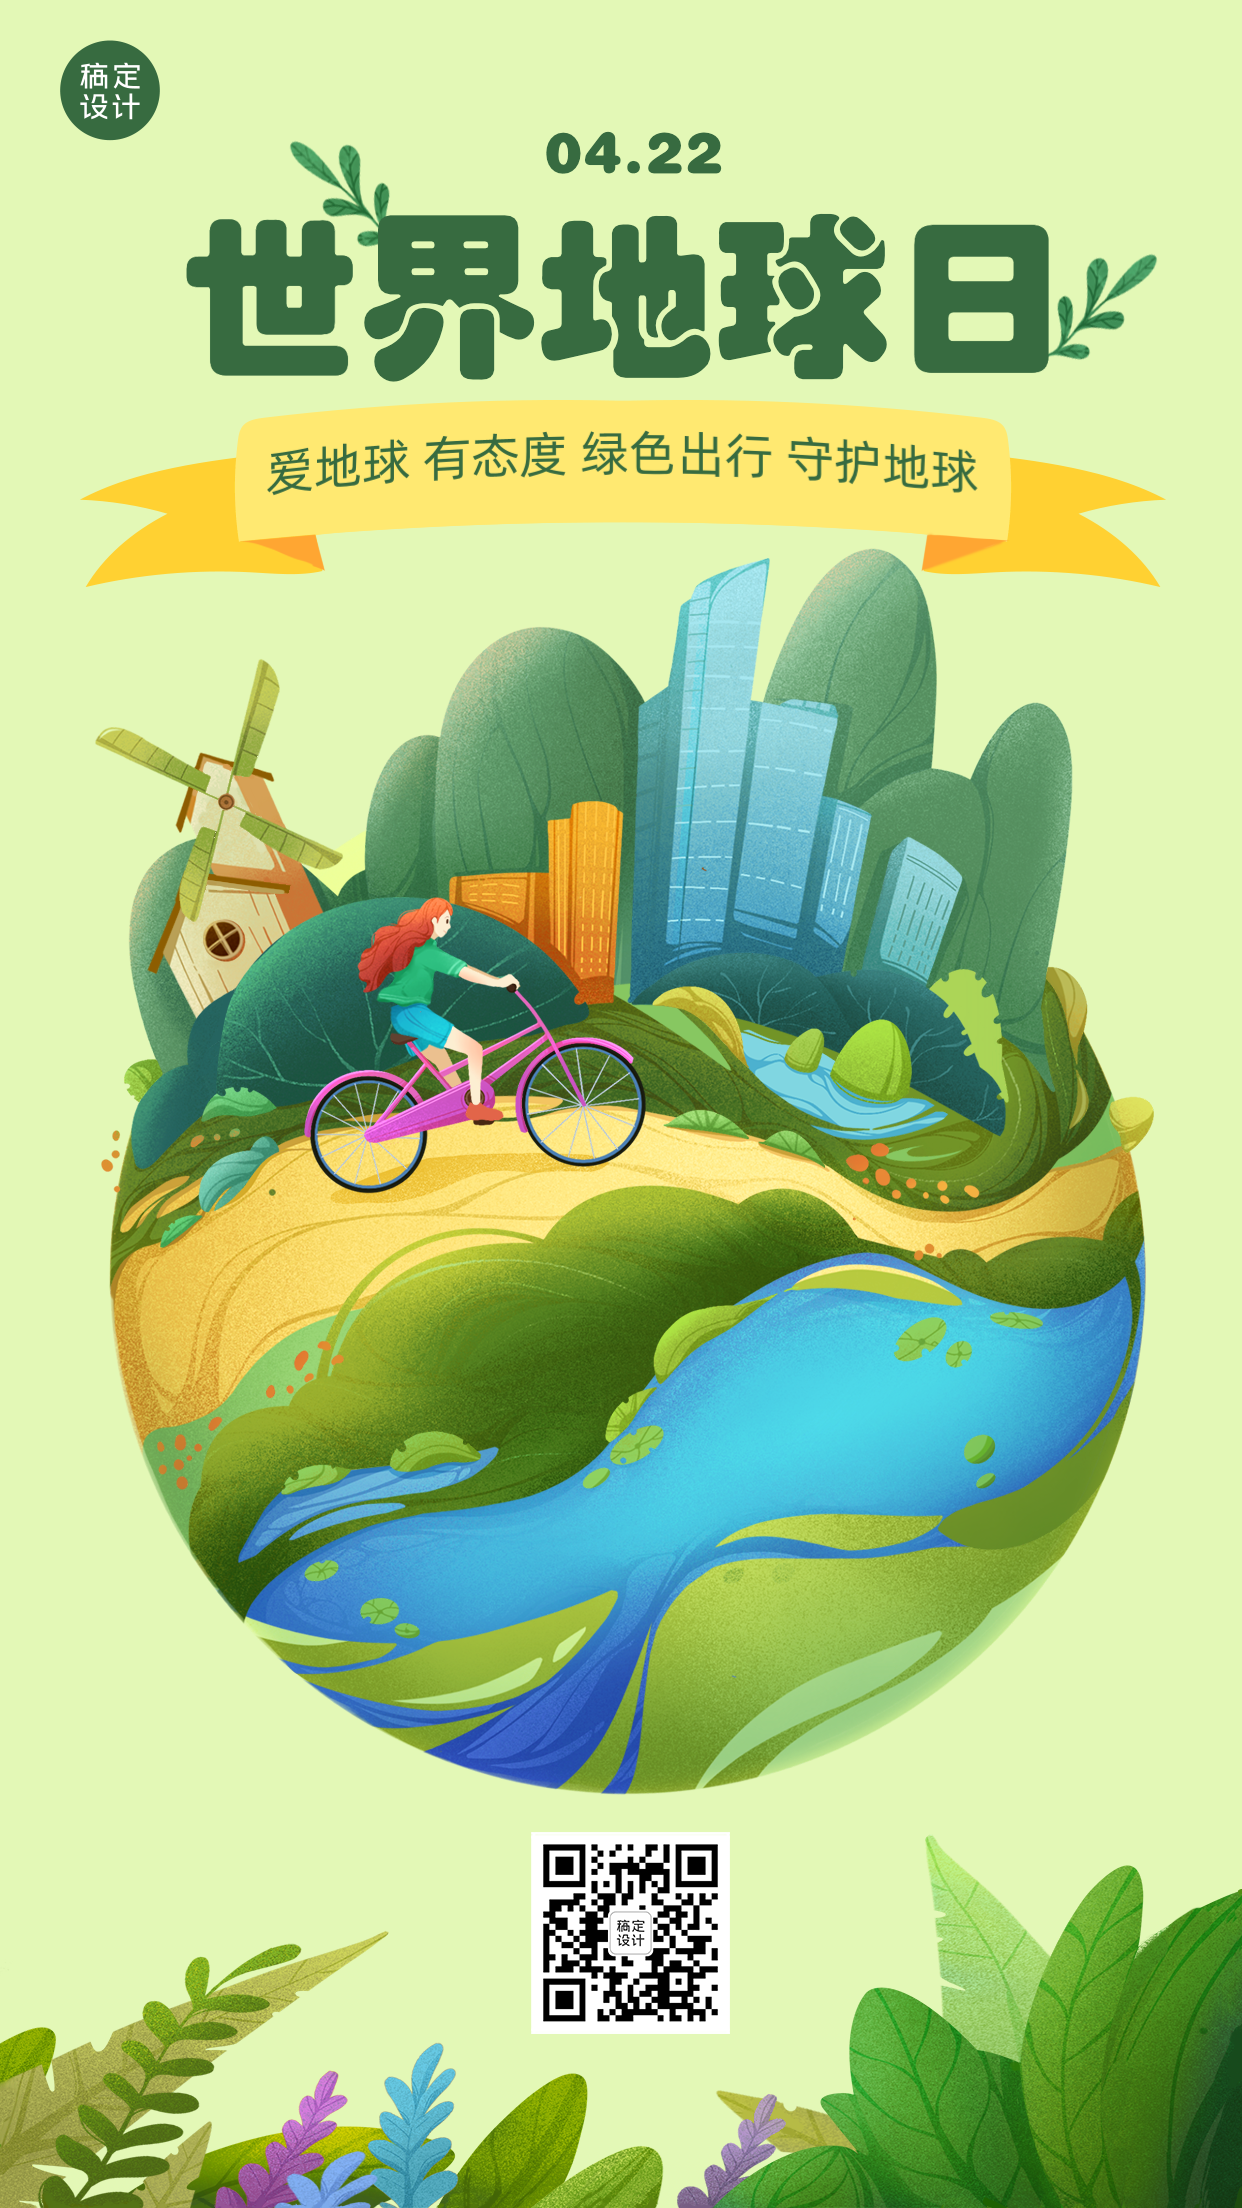 世界地球日保护环境公益手绘海报预览效果